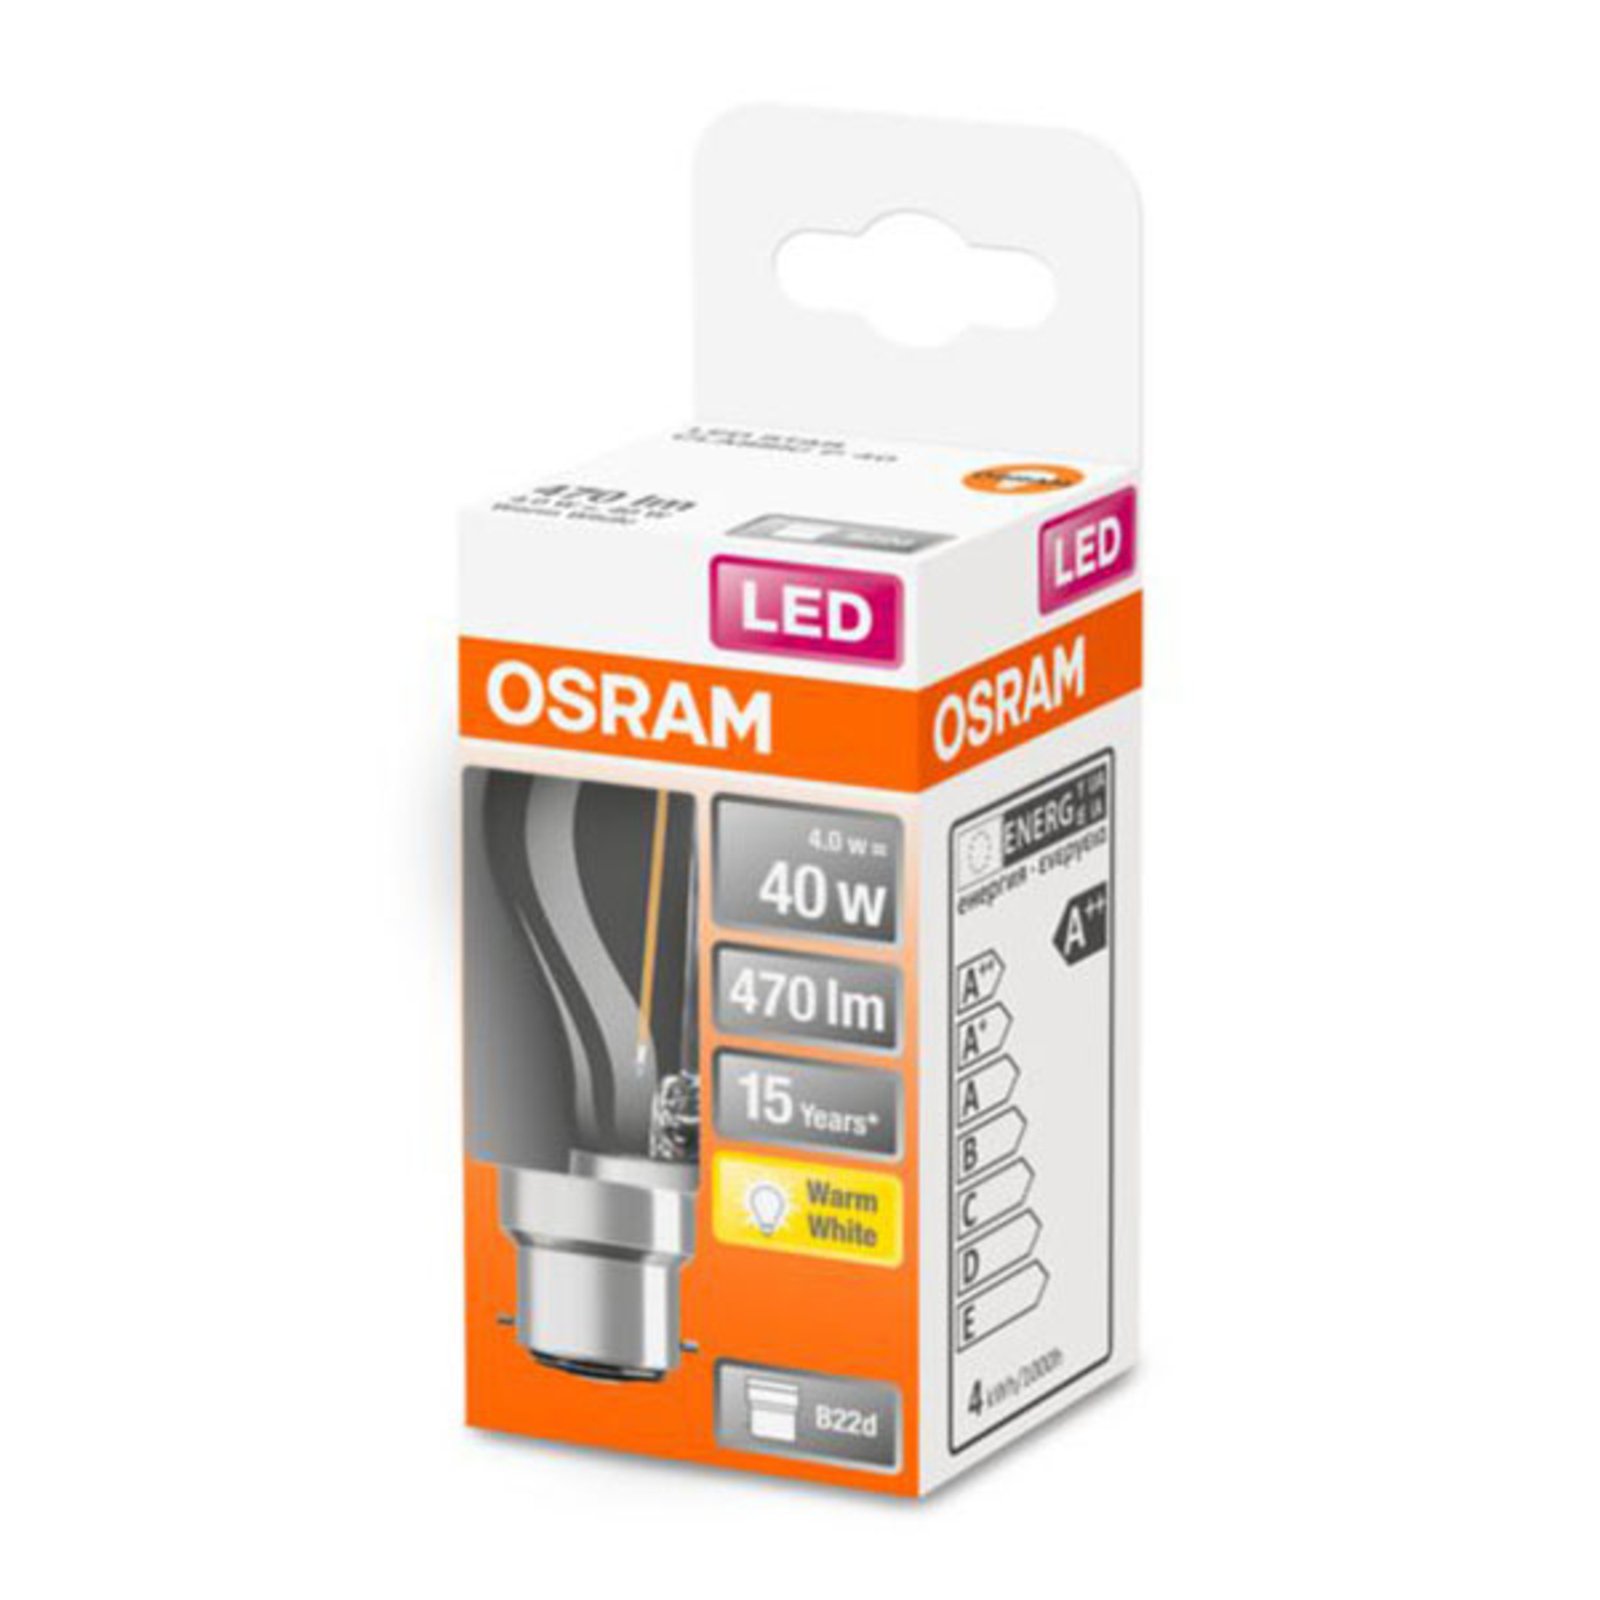 OSRAM LED druppellamp B22d 4W 2.700K helder